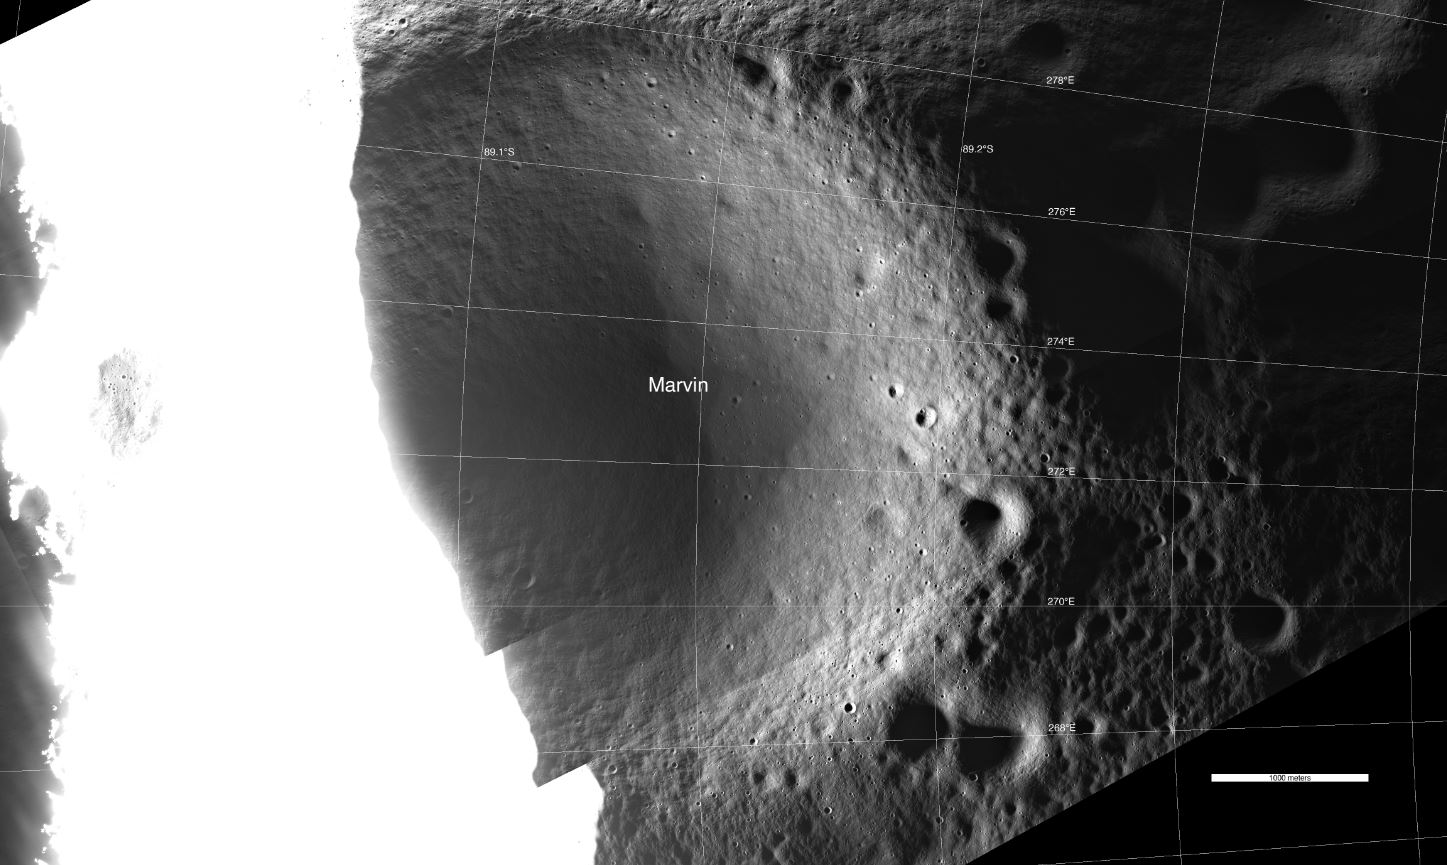 A Cratera Marvin foi fotografada usando luz refletida em comparação com os arredores inundados pela luz solar direta.